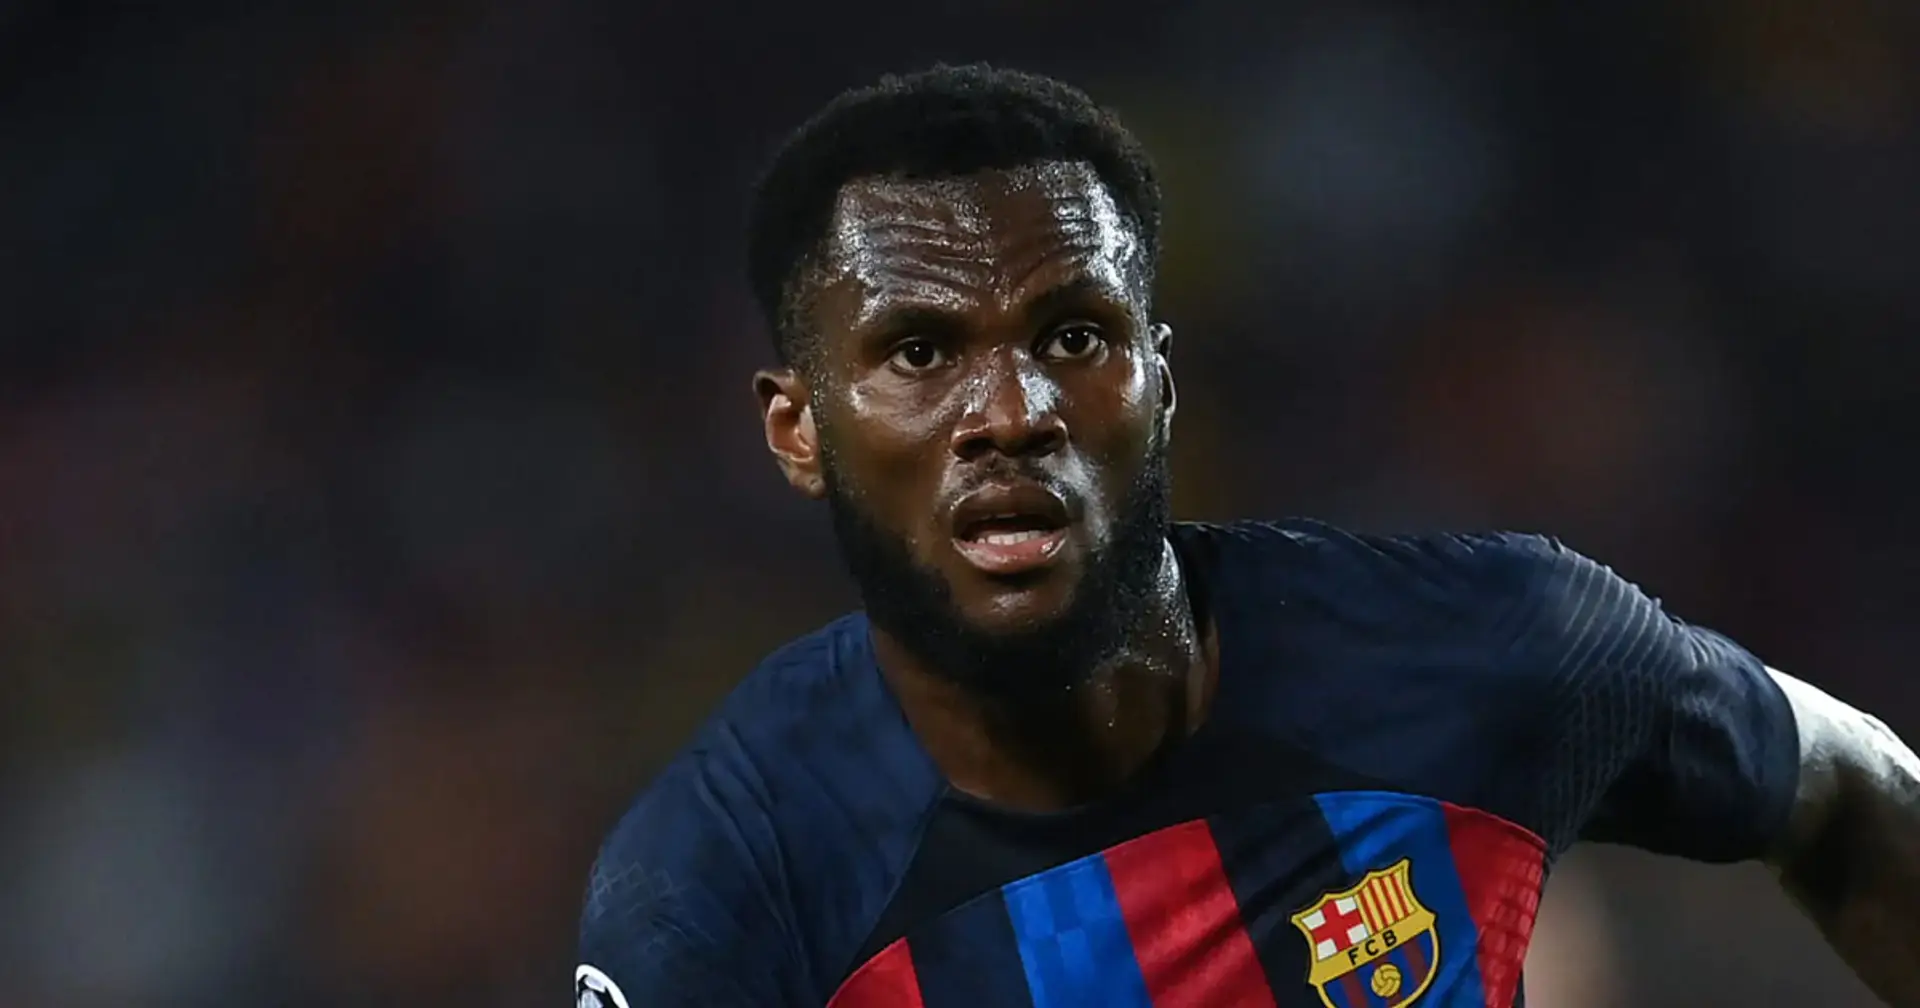 L'Inter può prendere Kessié a gennaio? Il ds del Barcellona fa chiarezza sul futuro dell'ivoriano